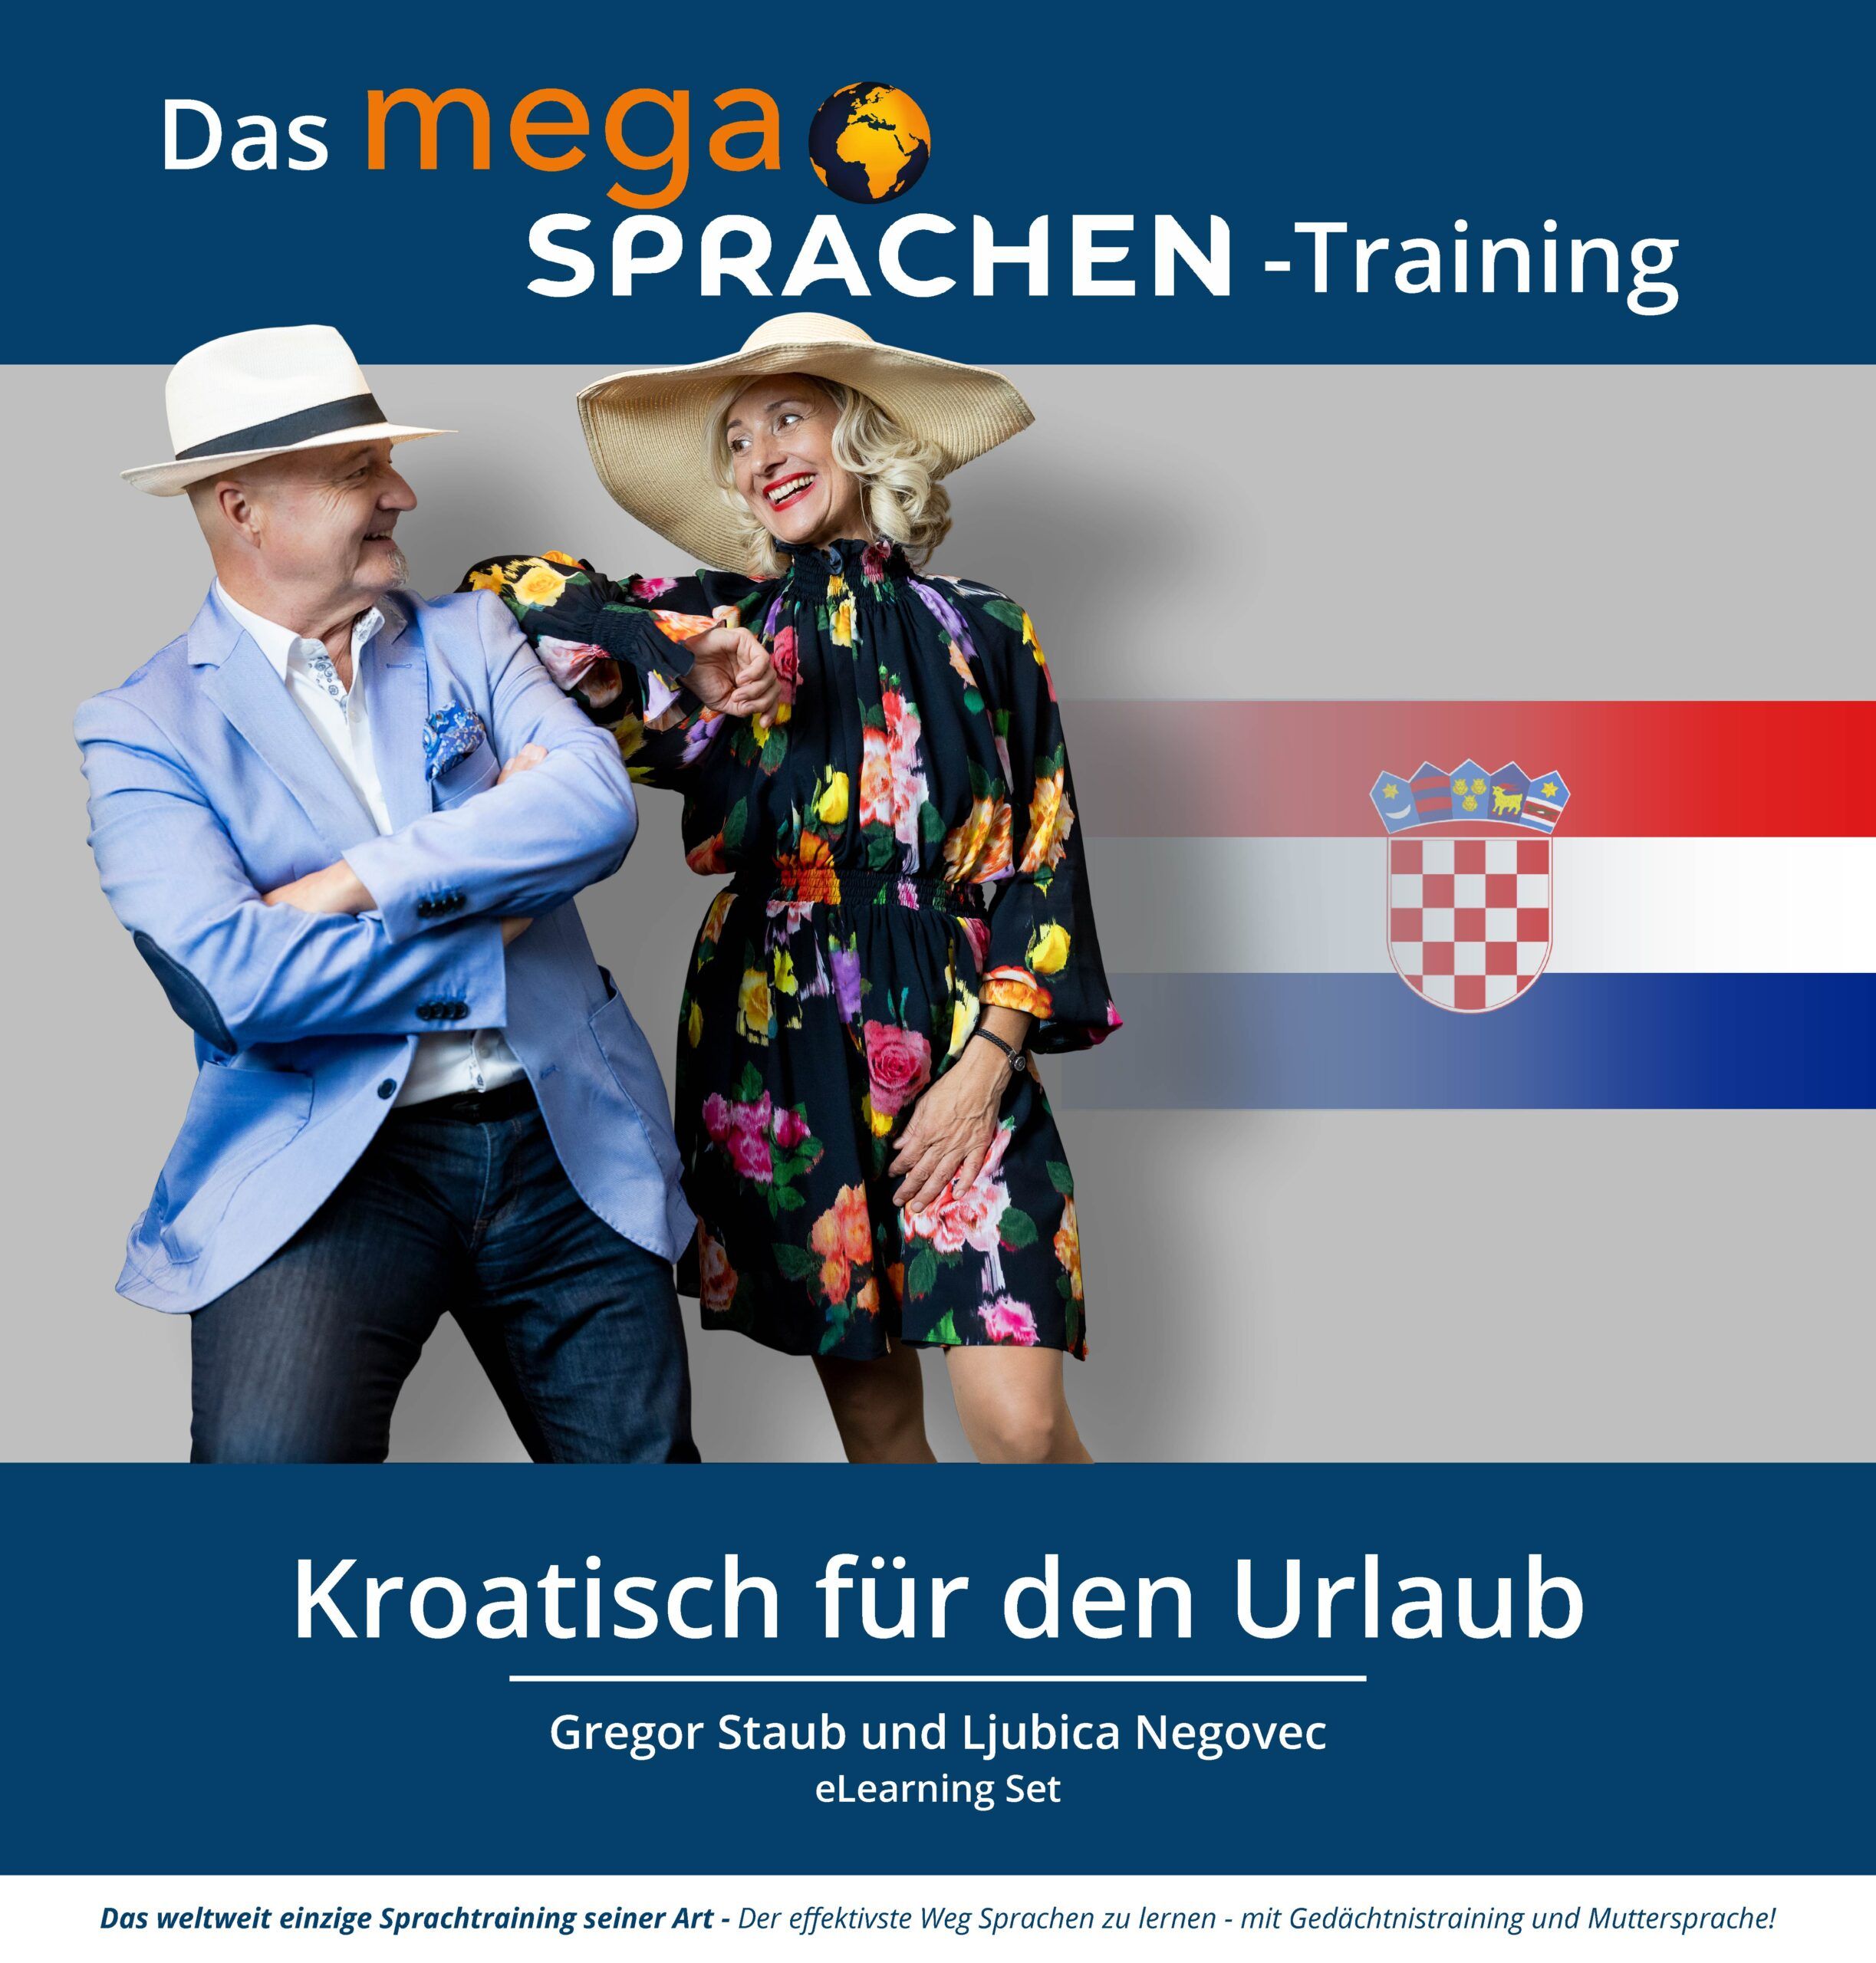 Kroatisch für den Urlaub megaSprachen-Training